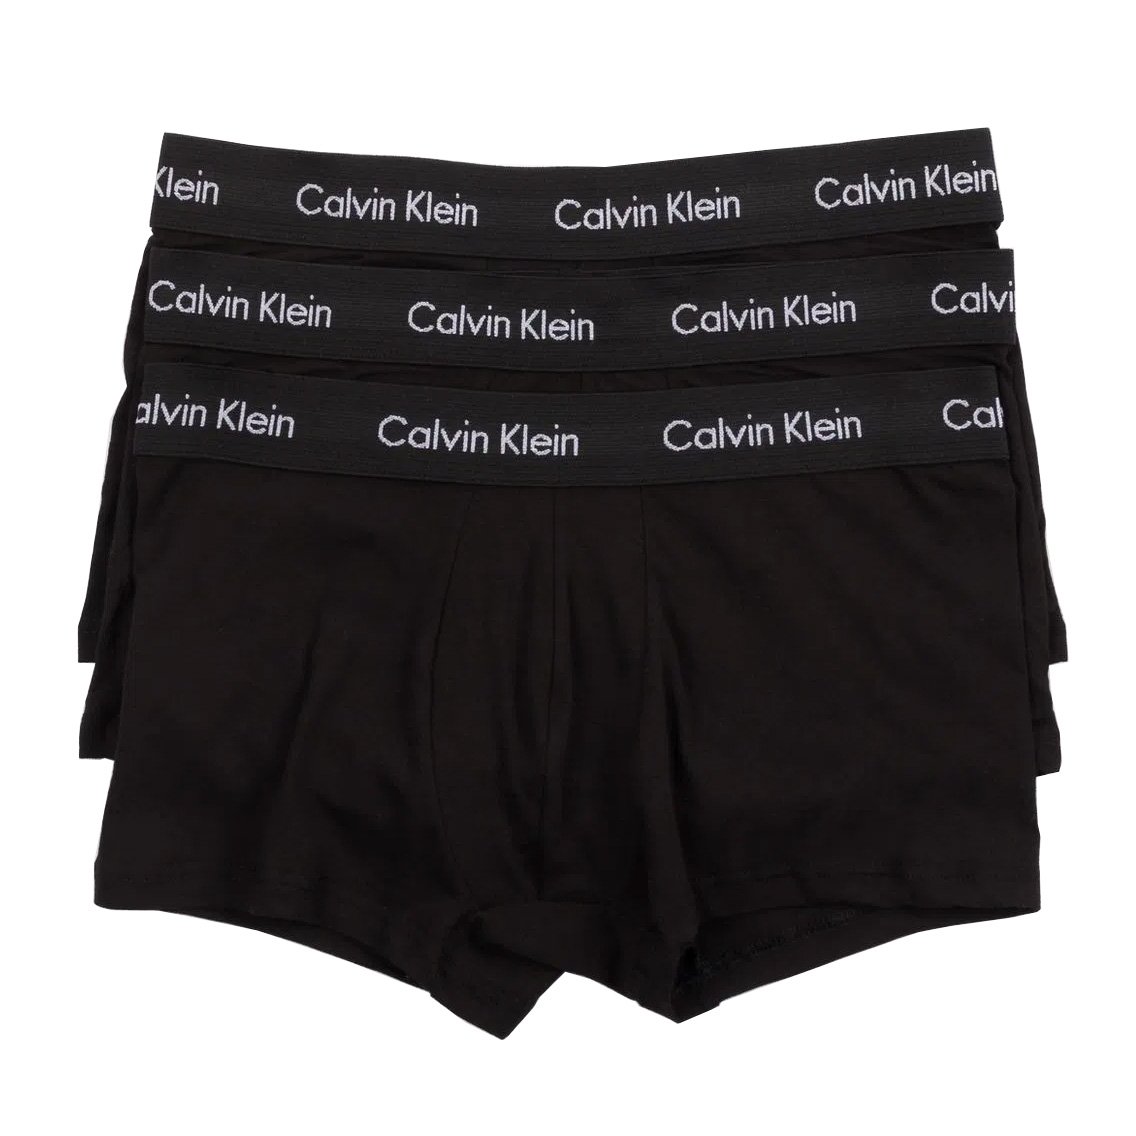 Calvin Klein(カルバンクライン)[NB2614-001]:ボクサーパンツ,男性下着,インナーの通販